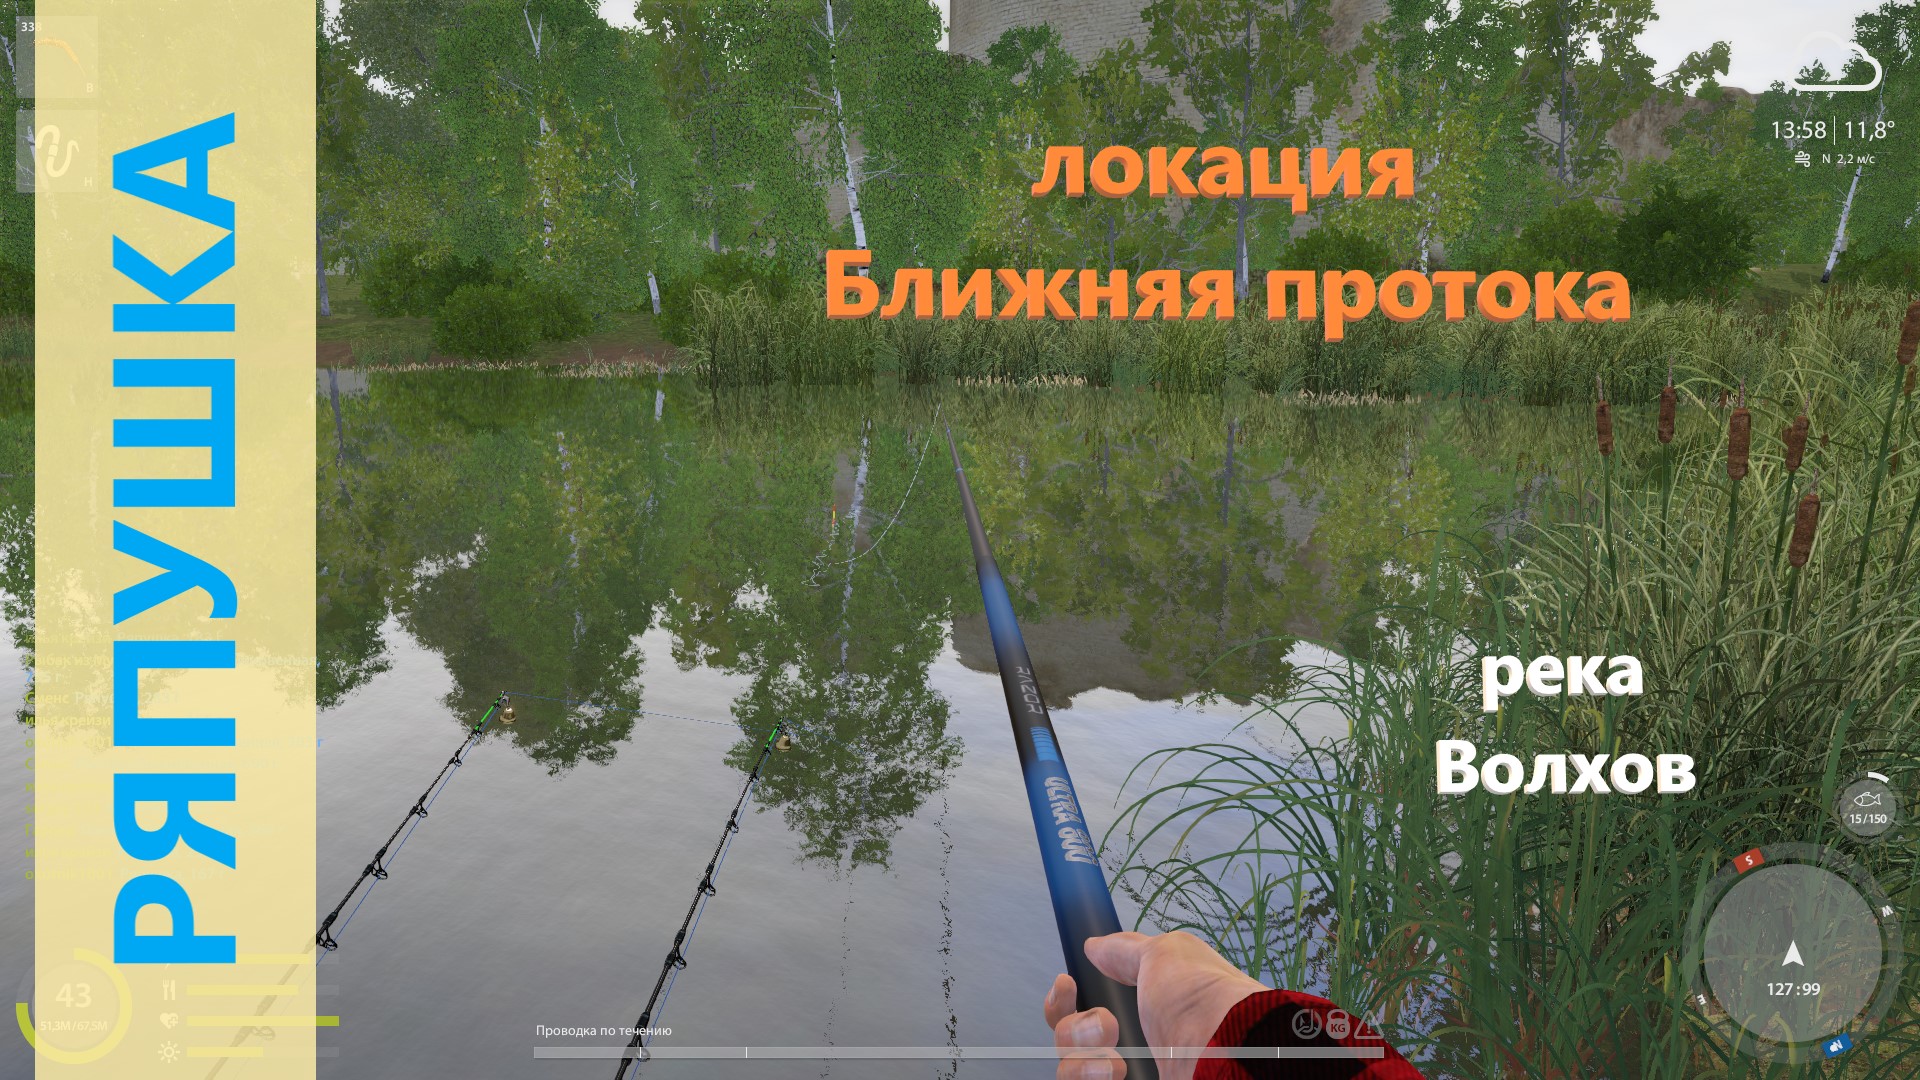 Русская рыбалка 4 - река Волхов - Ряпушка в протоке